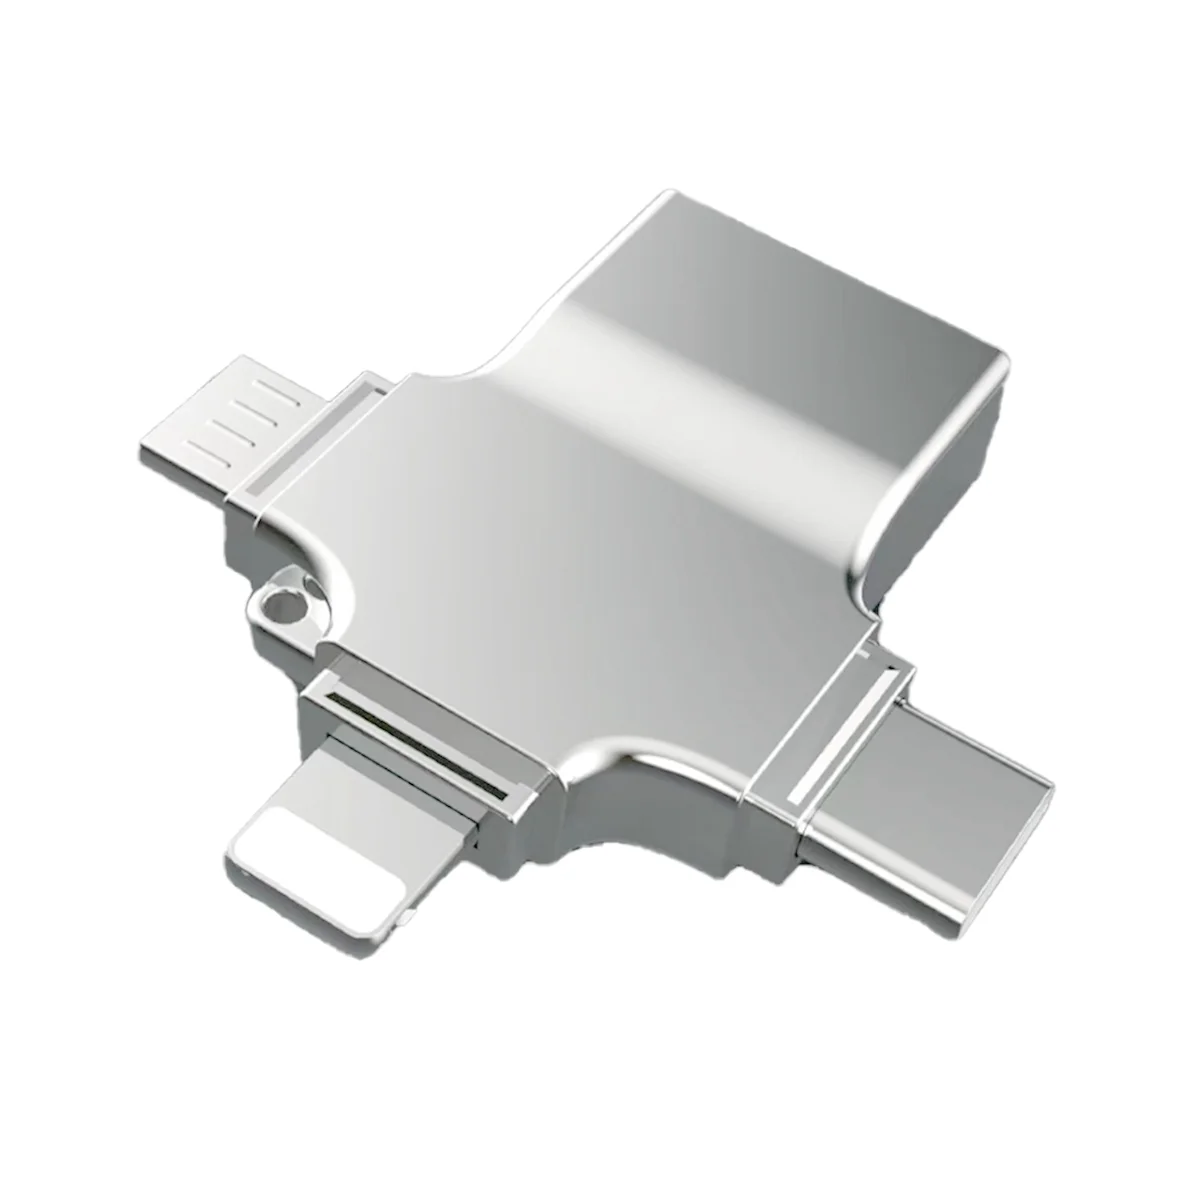 Устройство чтения SD-карт Адаптер для микро-карт 4 в 1 USB 3.0 Micro-Sd-USB Cardreader USB для интерфейса Apple OTG Adaptador